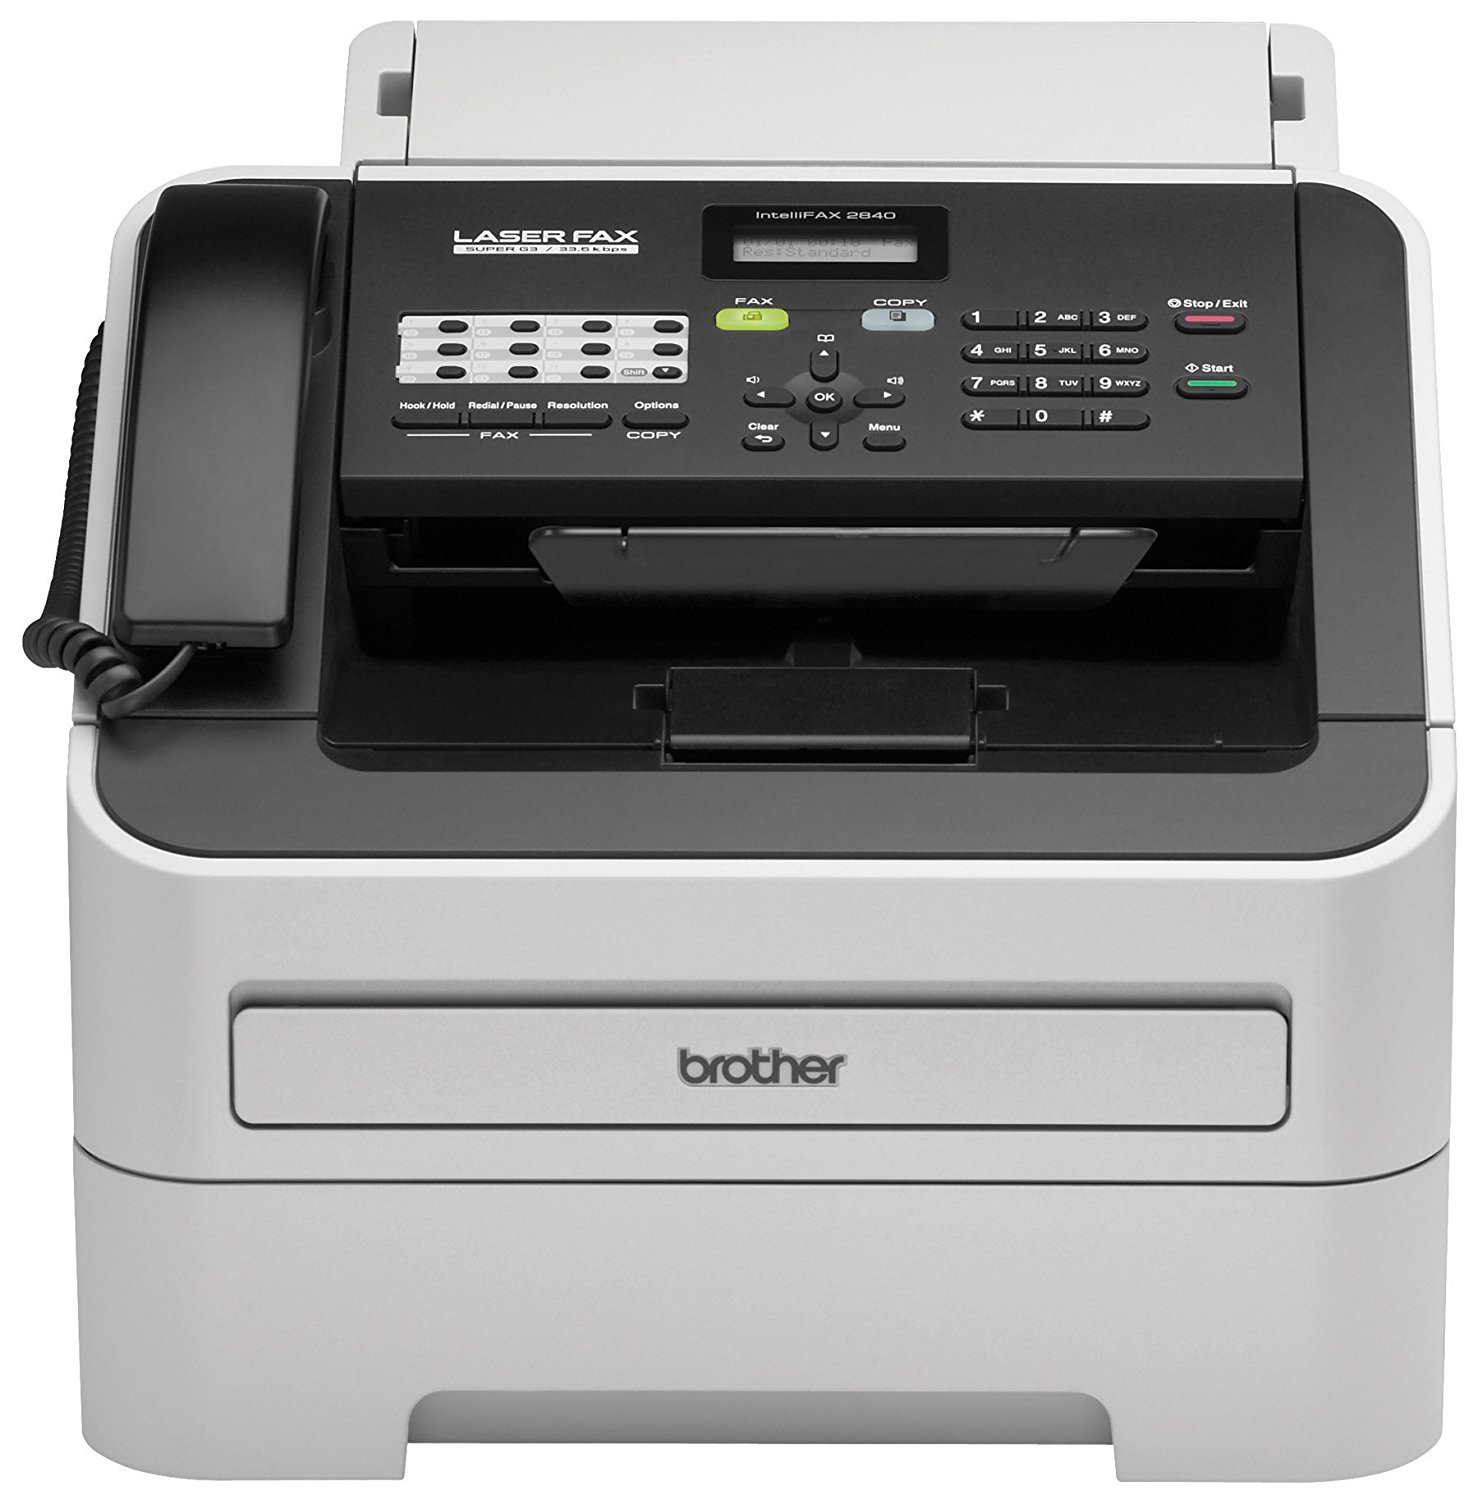 Brother Printer Impresora monocroma inalámbrica RFAX2840 con escáner y fax (reacondicionado certificado)